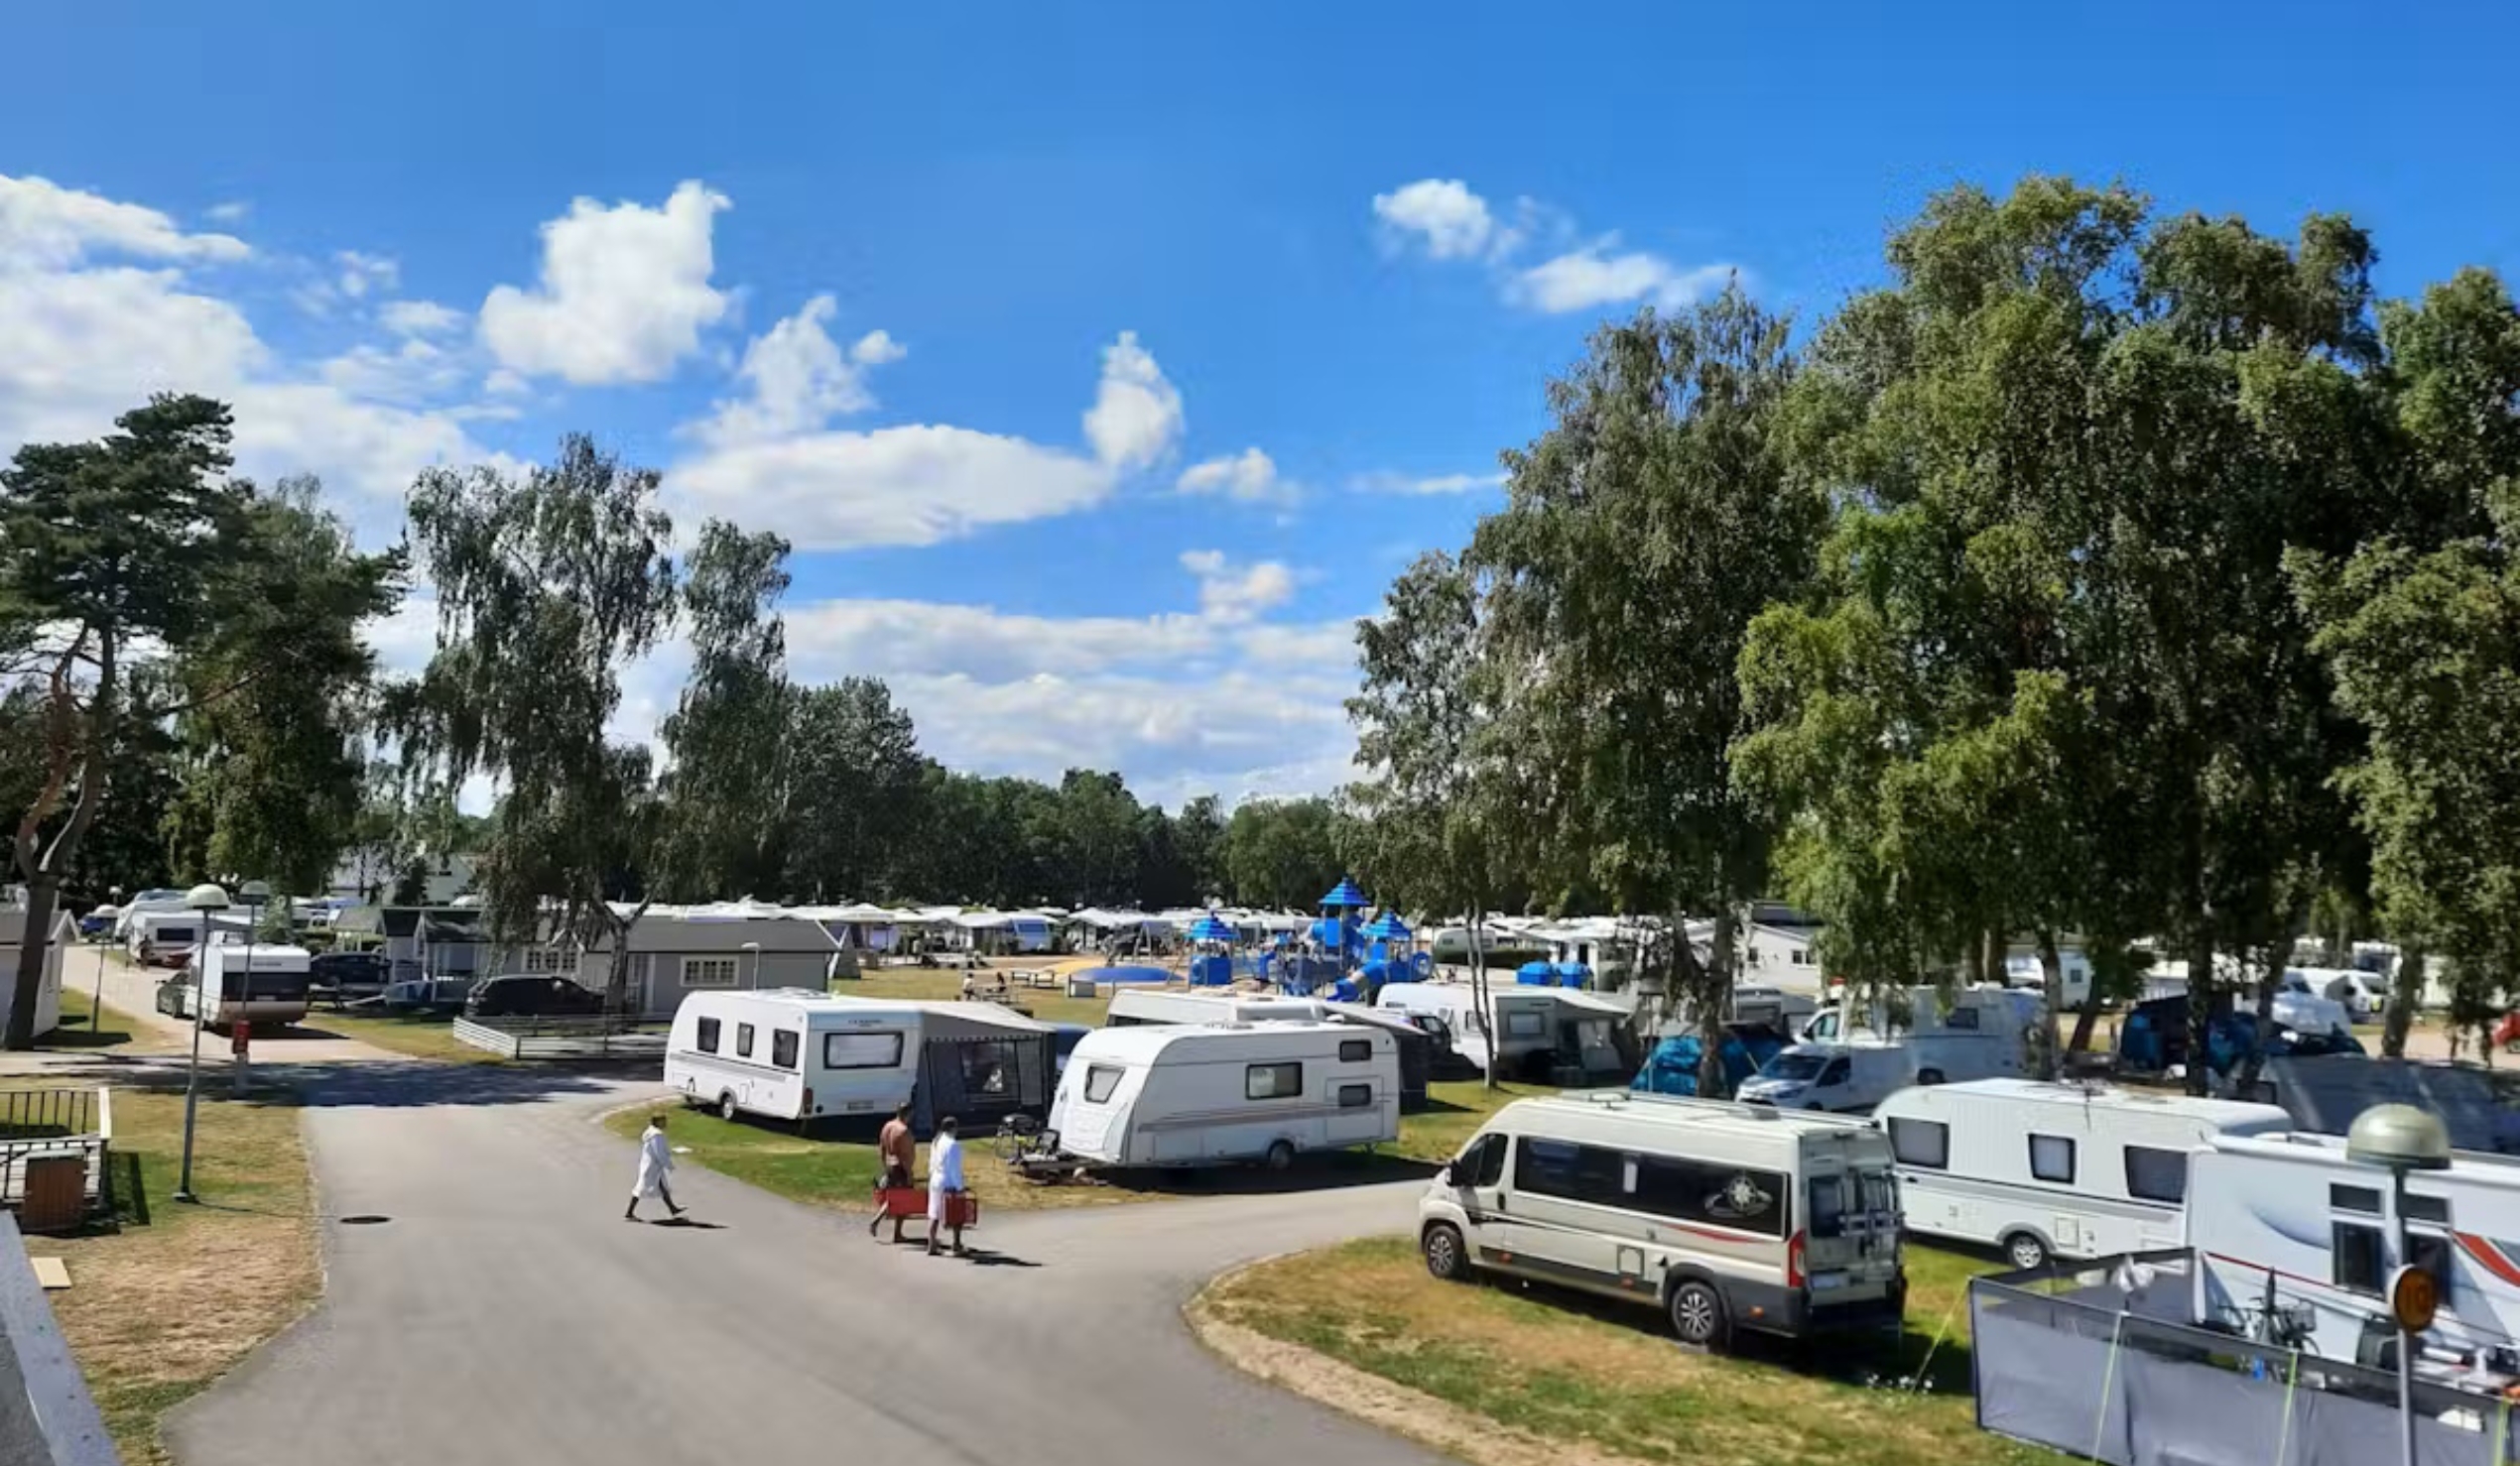 Falsterbo Camping & Resort är en populär camping. Copyright: Pincamp.de